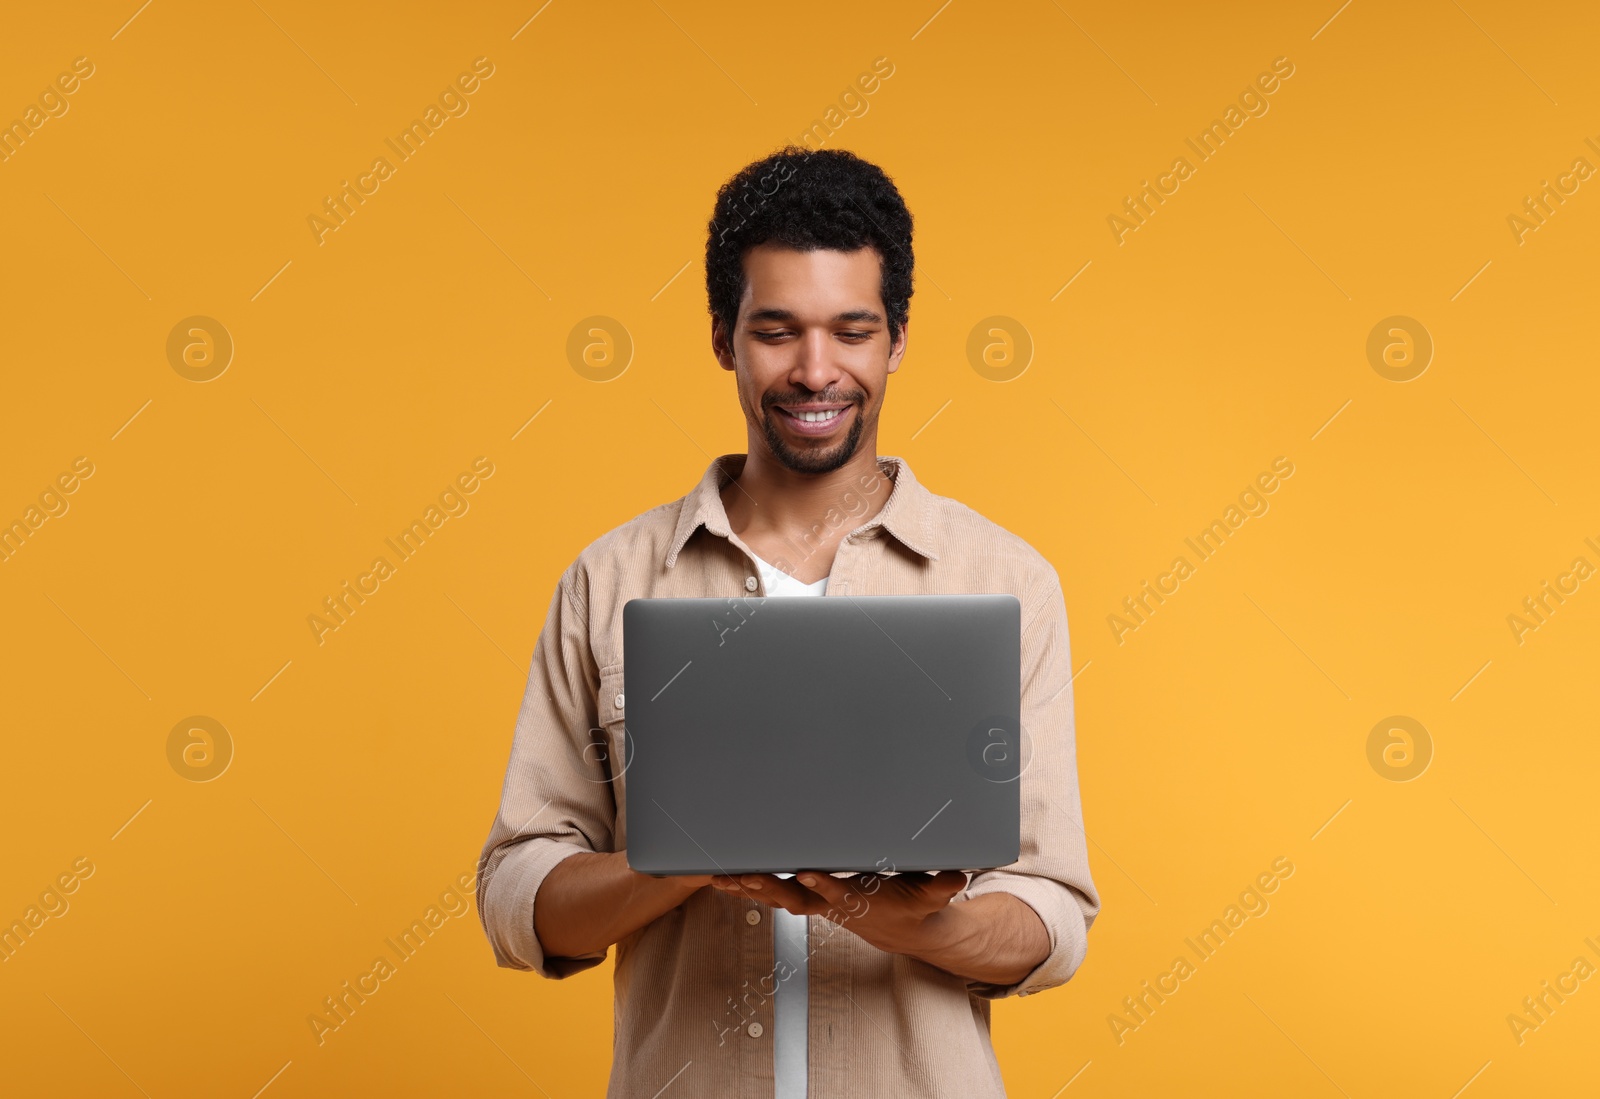 Photo of Happy man using laptop on orange background